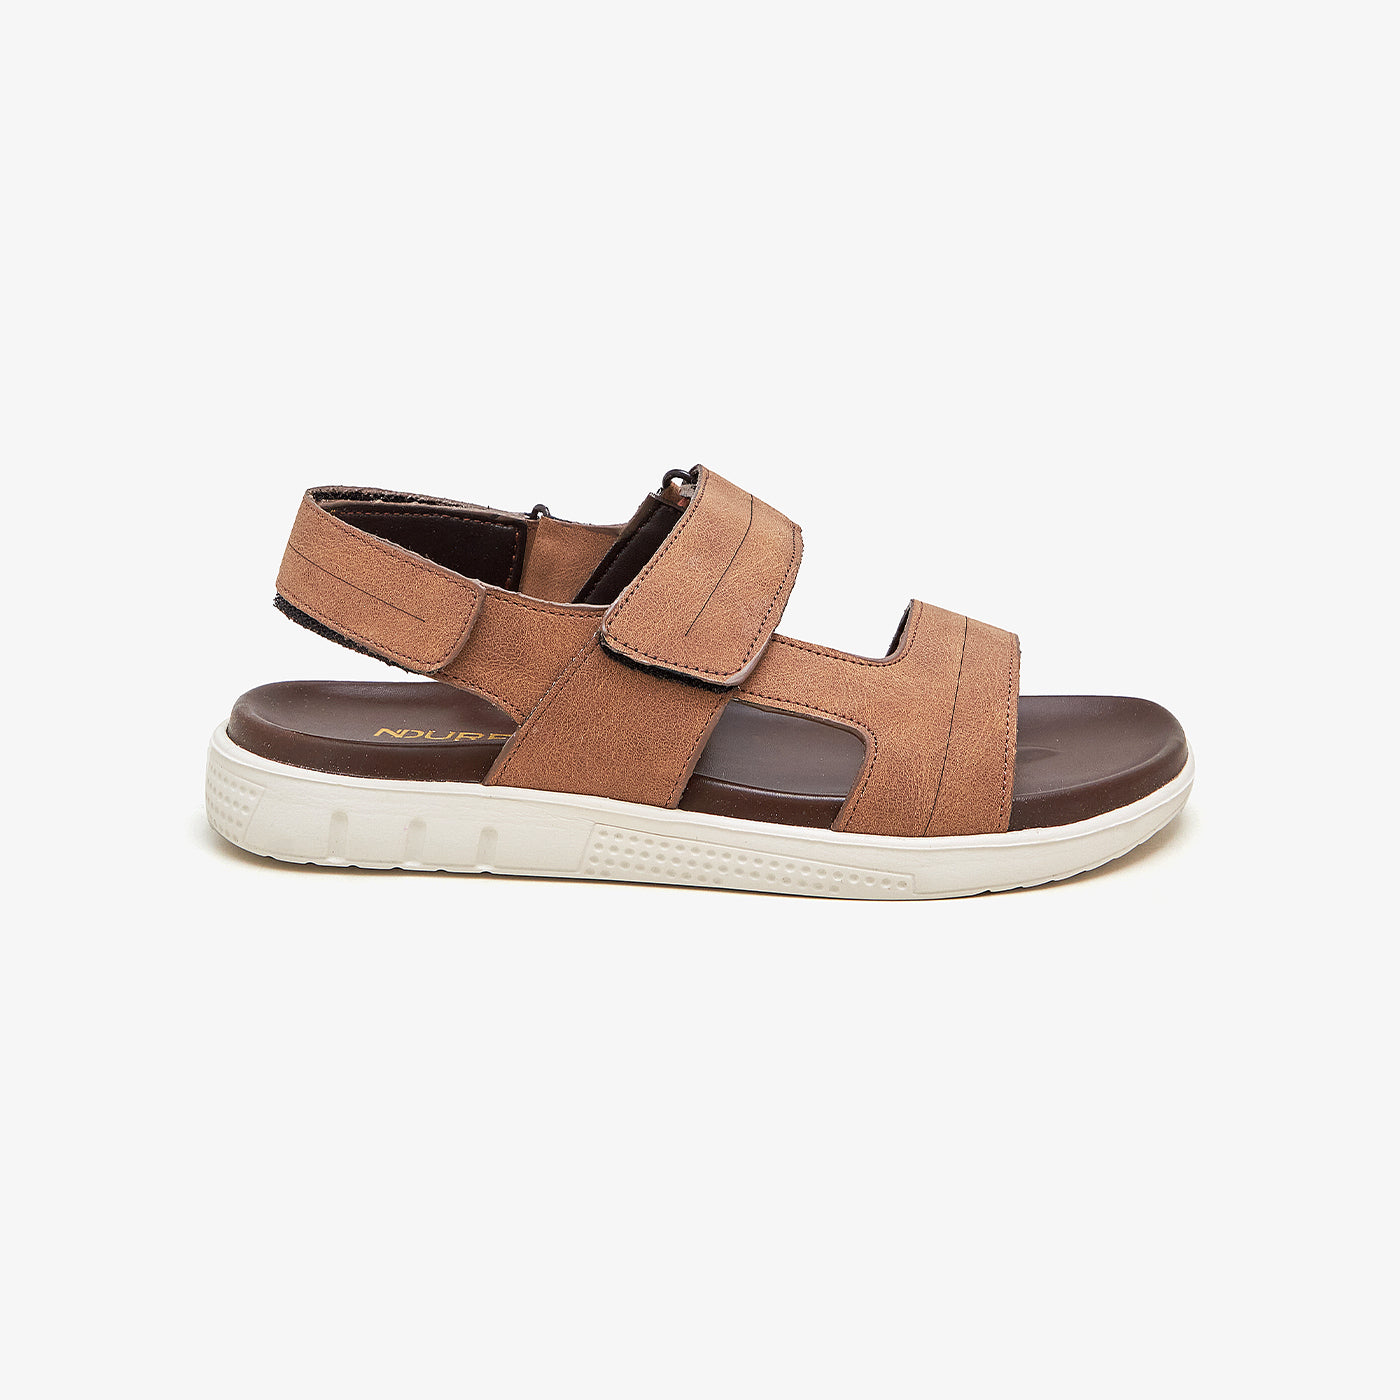 Men's Soft Summer Sandals